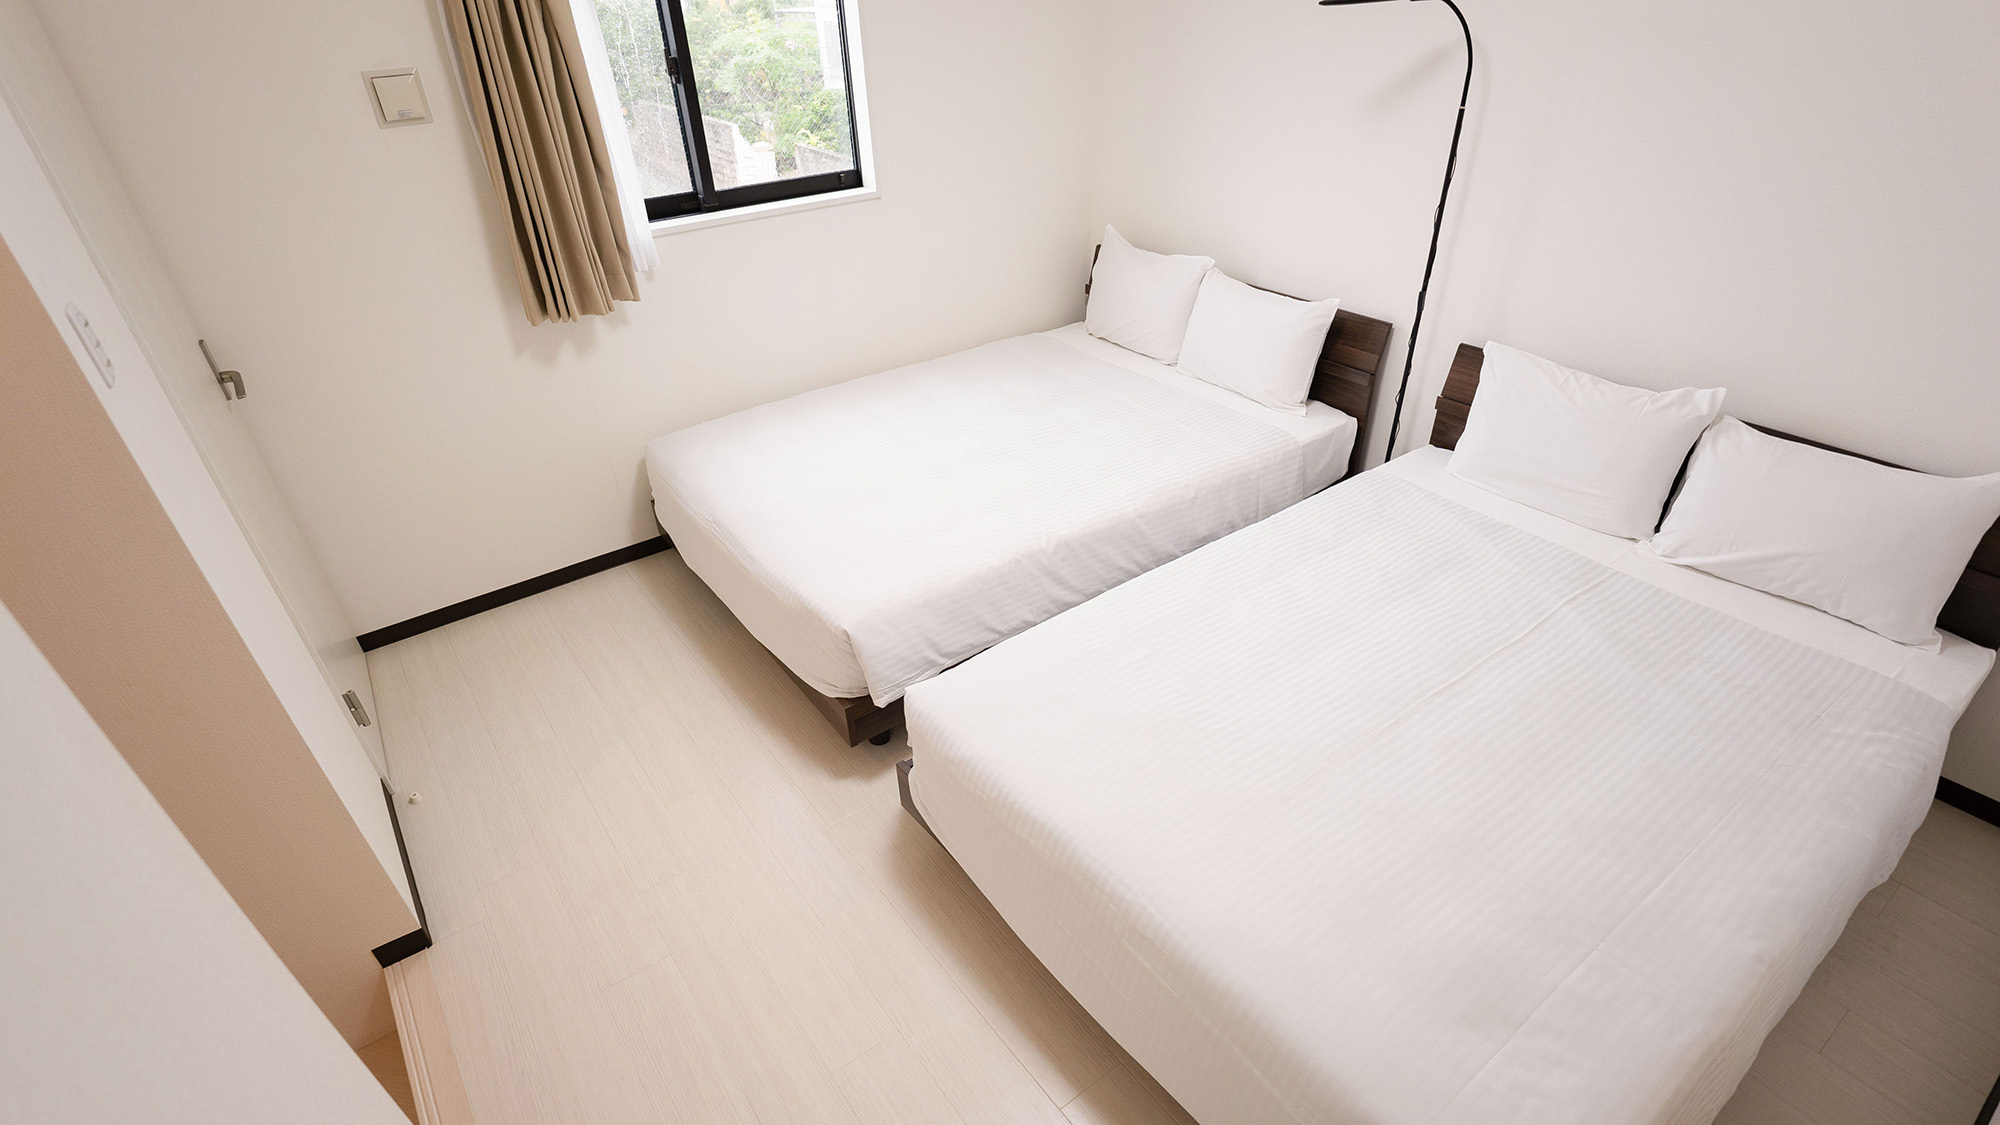 ・【2F寝室 】ダブルベッド2台の明るい雰囲気のお部屋です